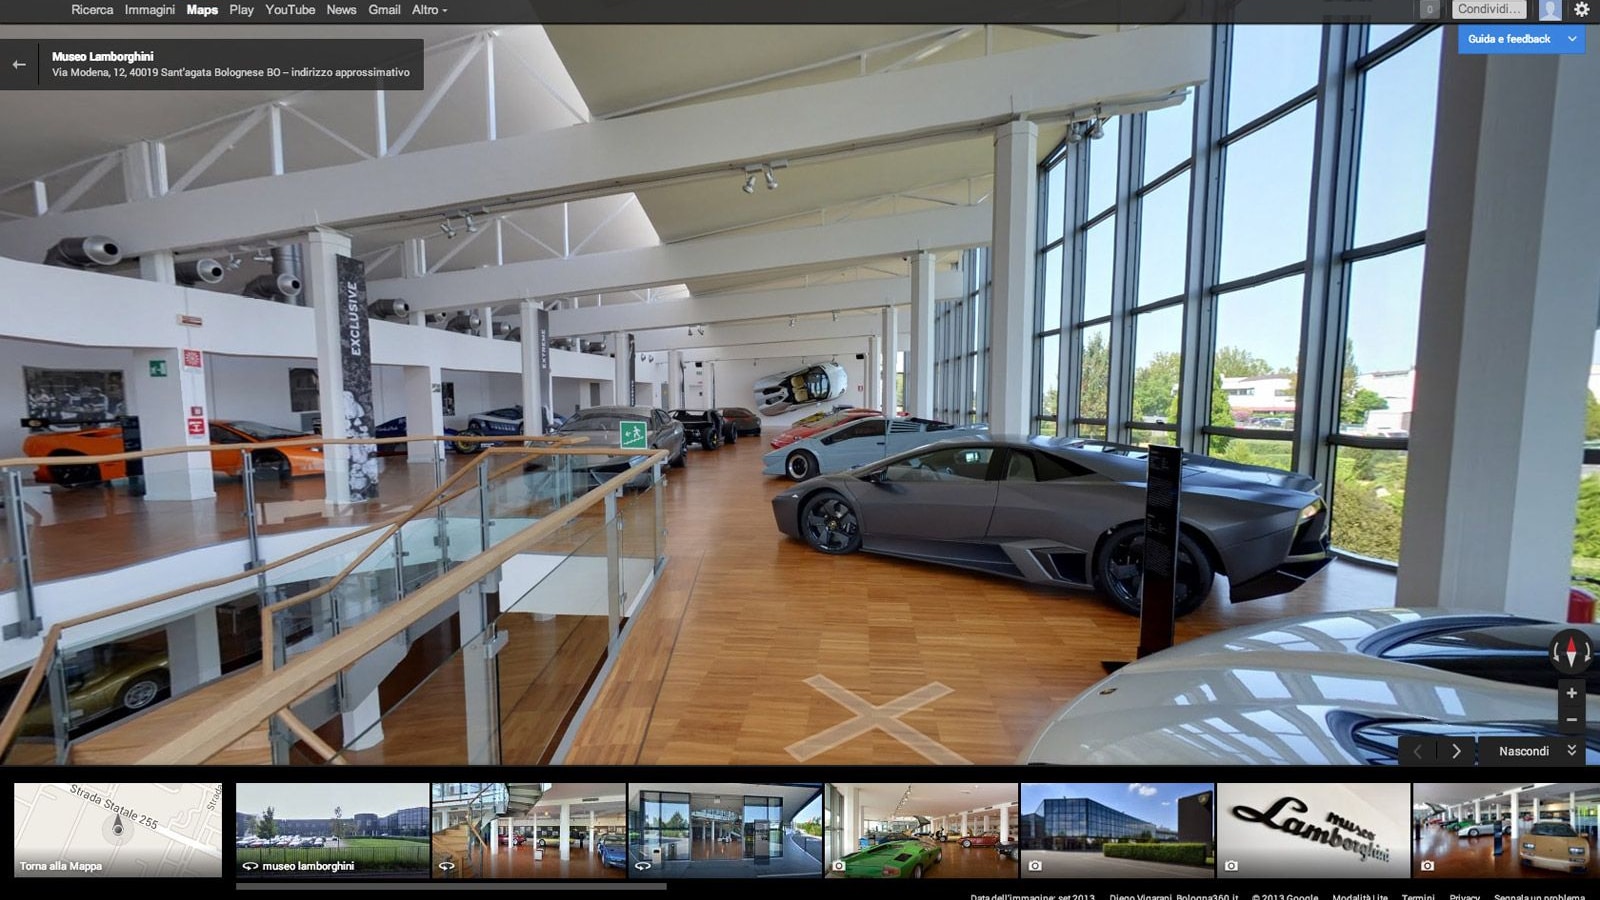 Lamborghini Museum virtual tour